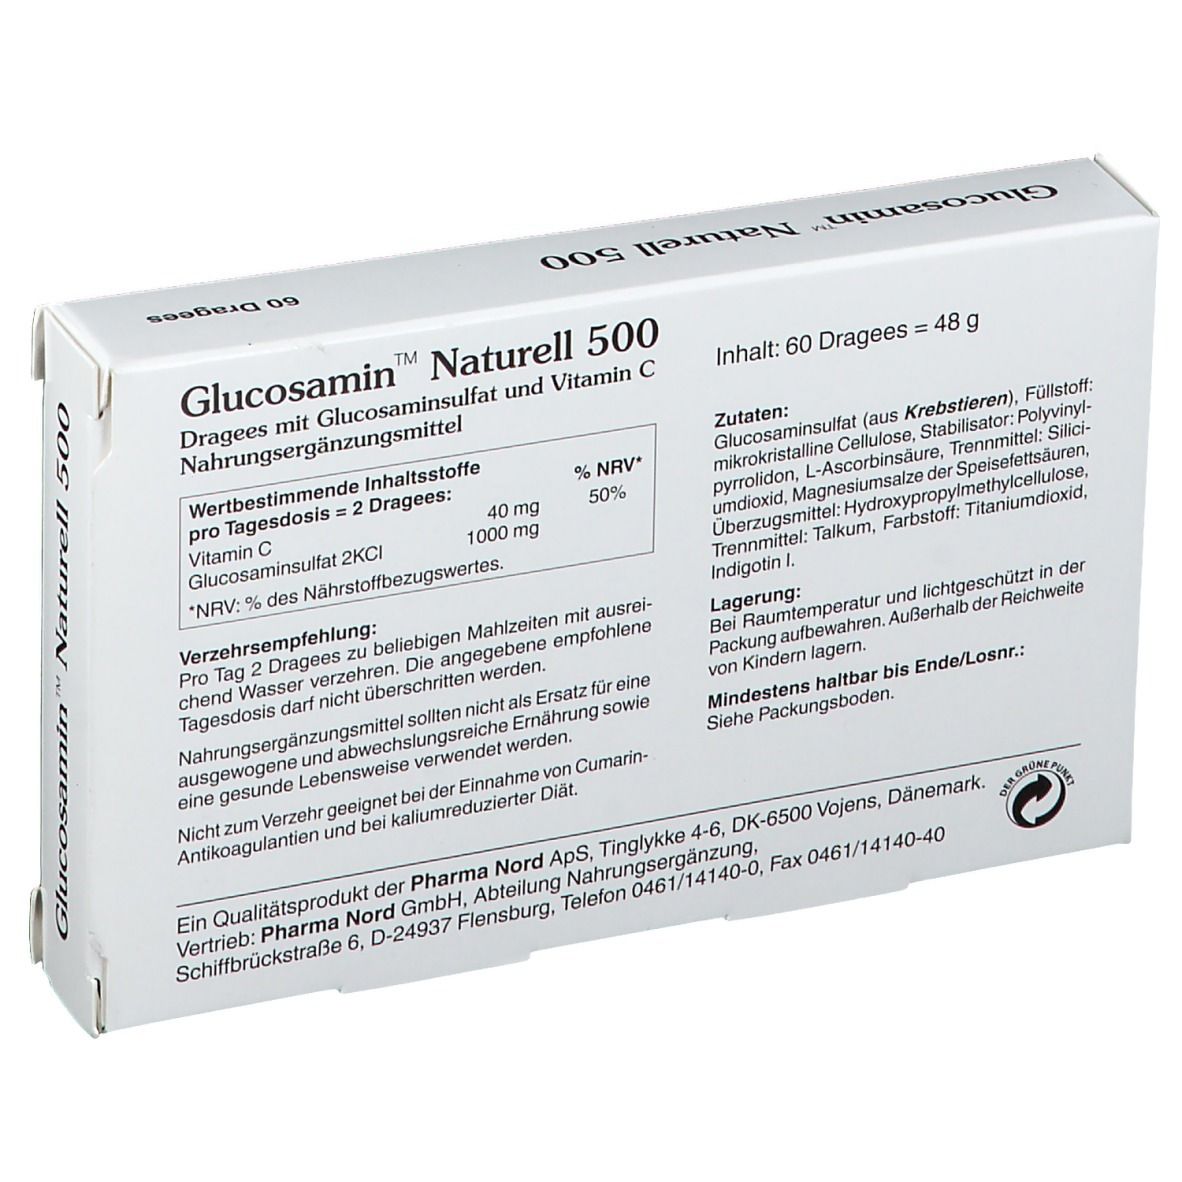 Glucosamin Naturell 500 mg Dragees